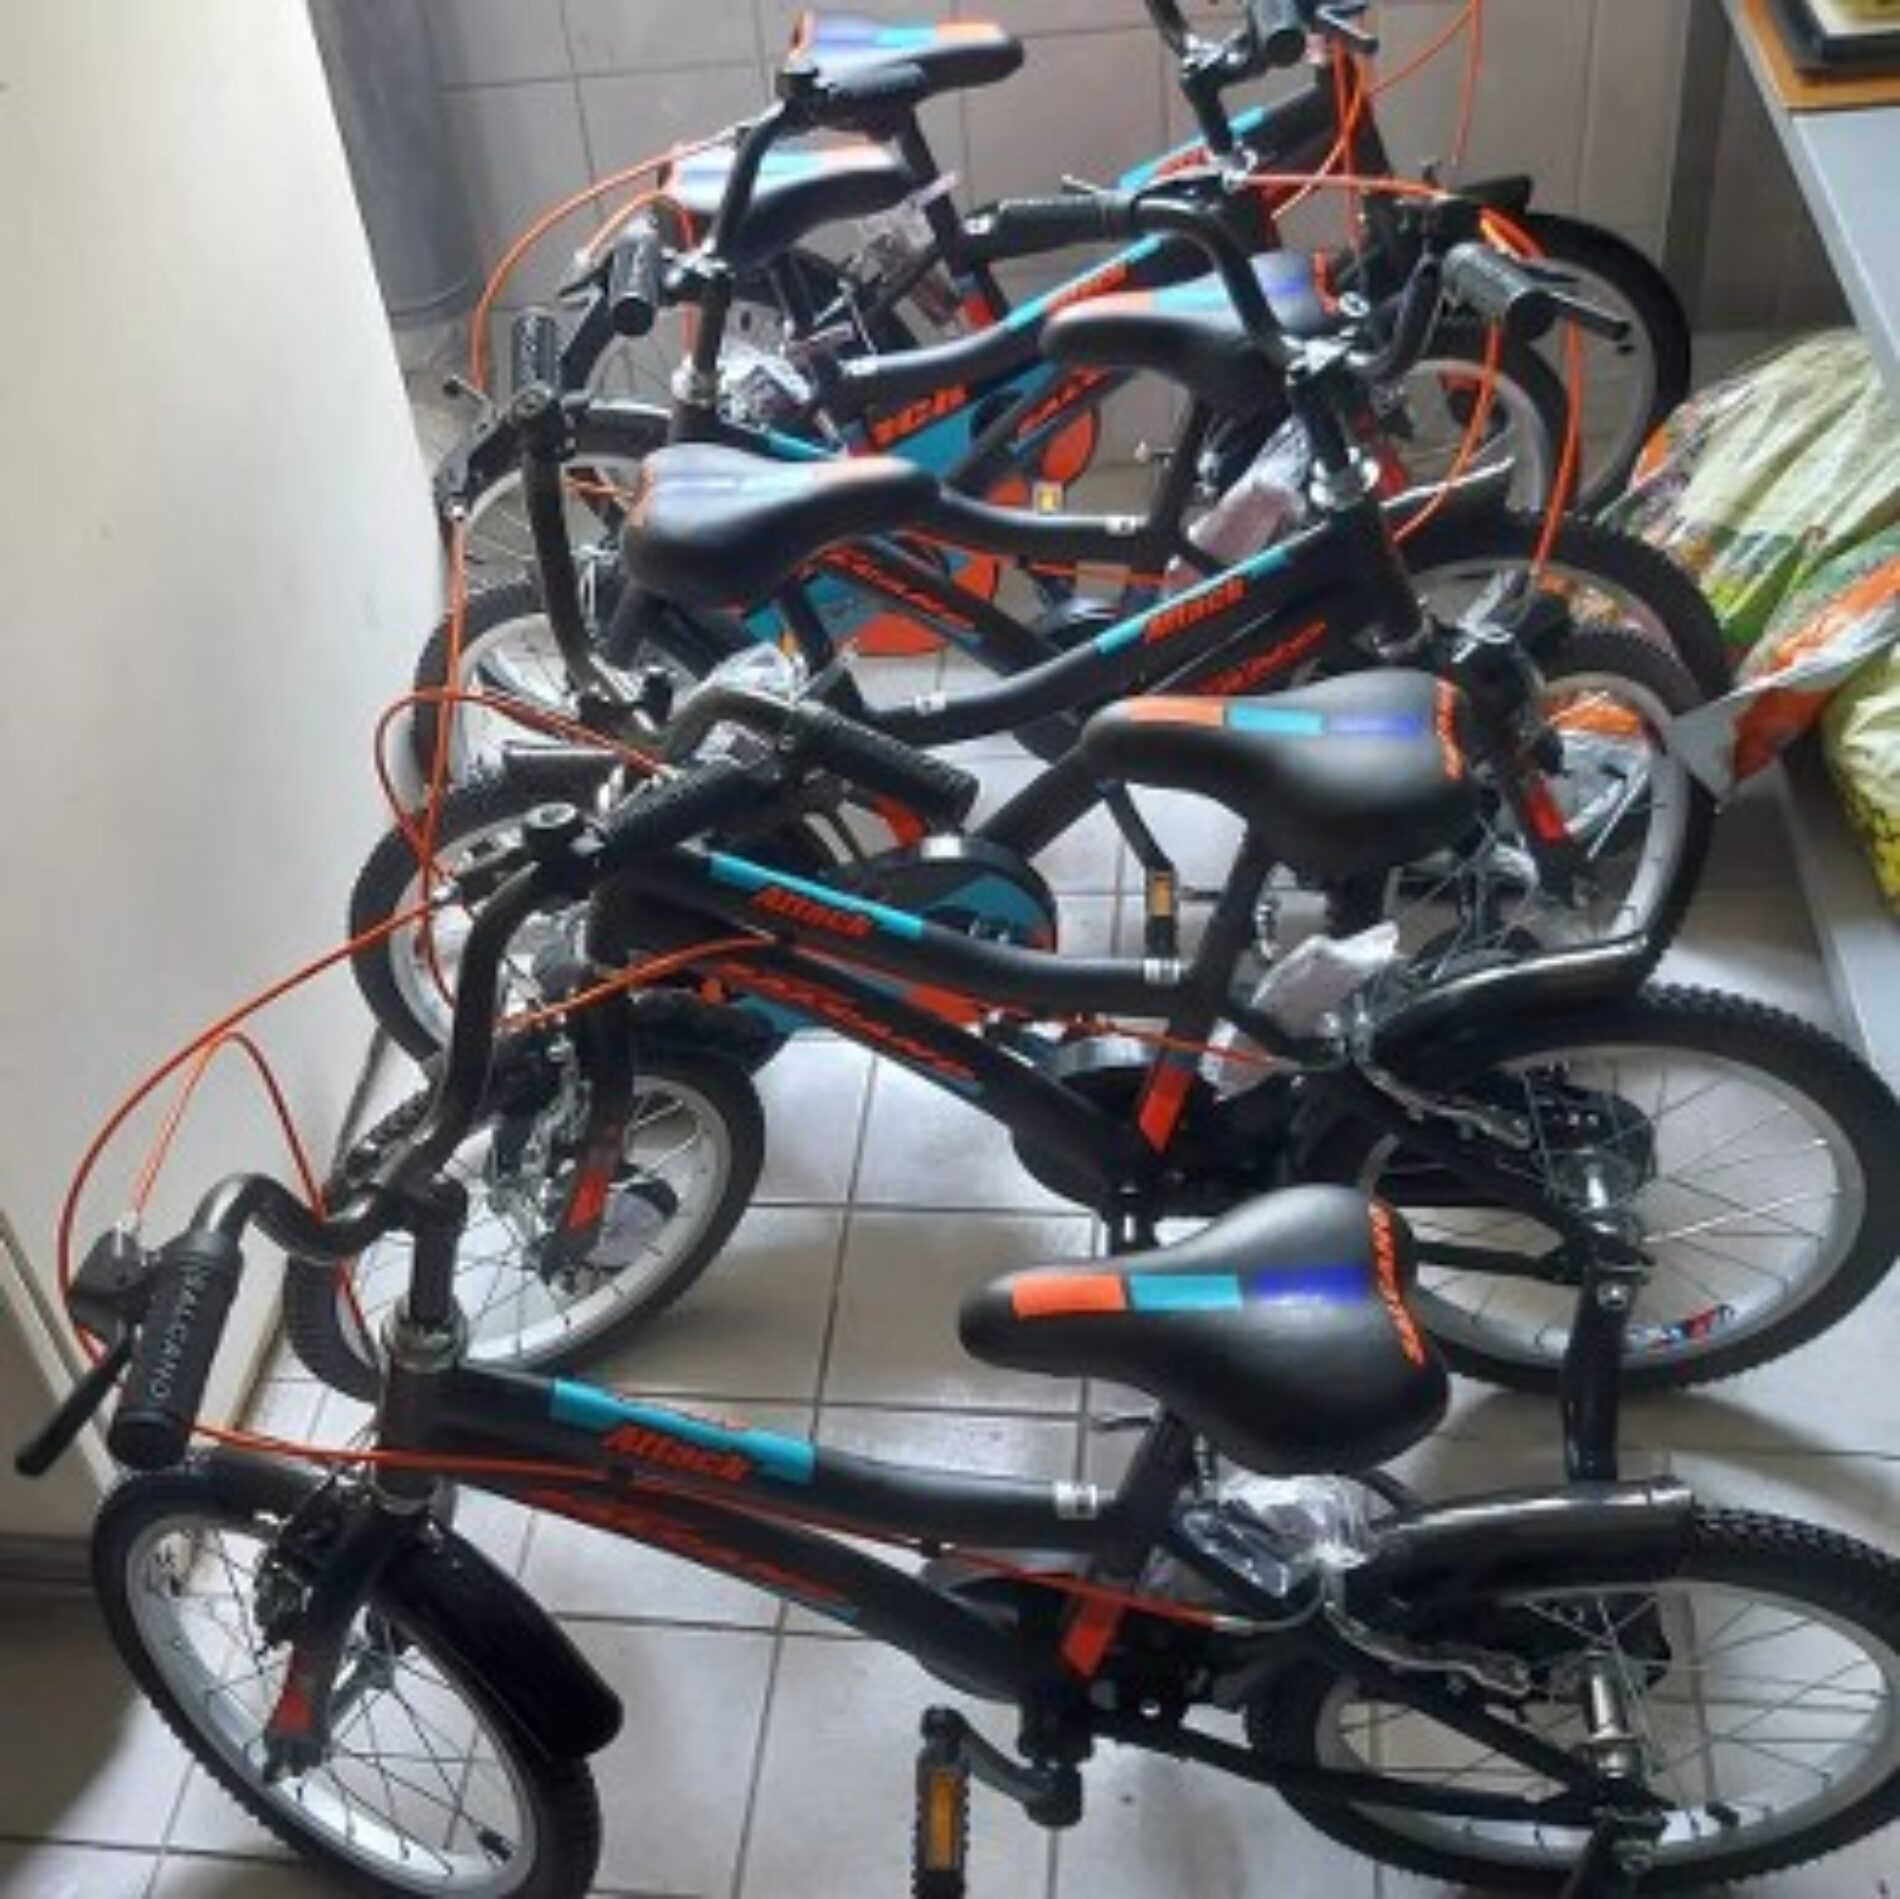 TYSD Kadıköy Şubemiz Semiha Şakir Çocuk Yuvasına 10 Adet Bisiklet Bağışında Bulunmuştur